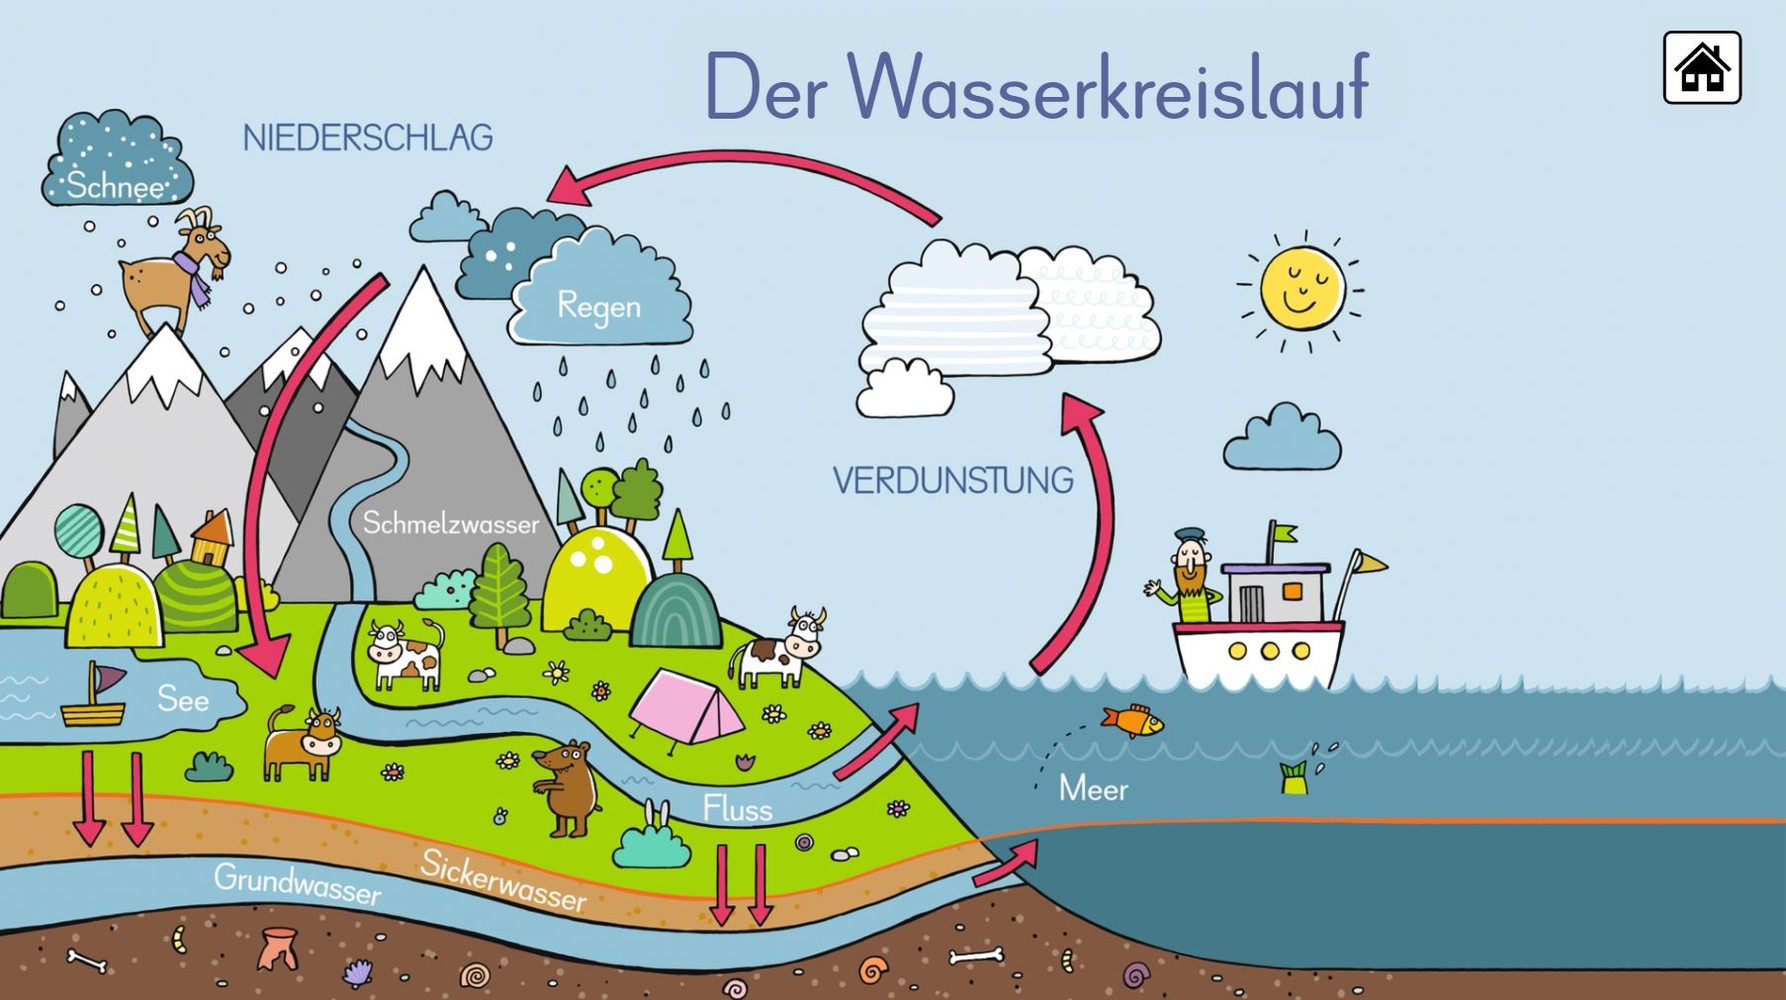 6 digitale Merk-Bilder für den Sachunterricht: Die Ernährungspyramide, Europa, Deutschland, Der Wasserkreislauf, Unsere Bäume, Unser Sonnensystem - Premium-Lizenz - Windows